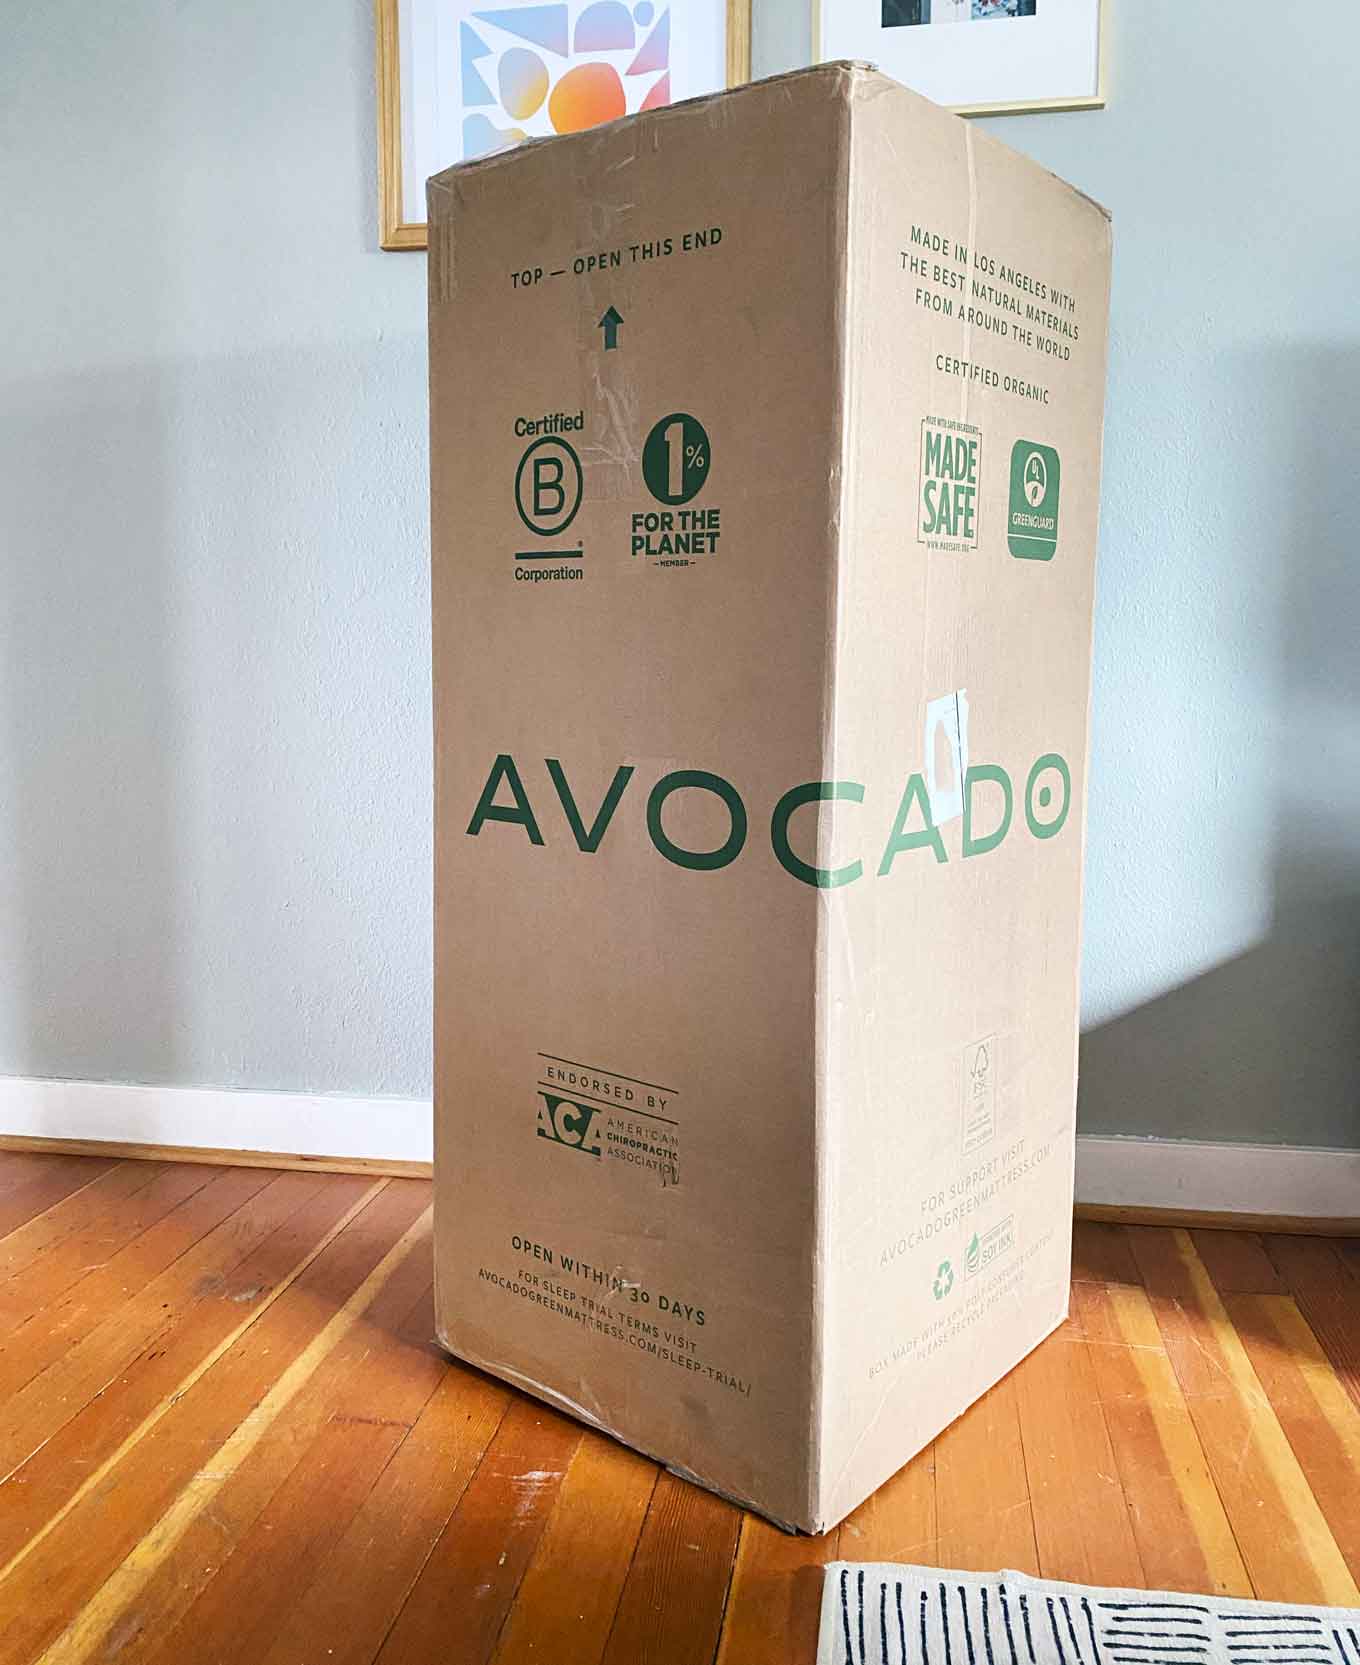 Doos voor Avocado eco biologische matras, voor het uitpakken. De doos heeft logo's voor Certified B Corporation, 1% voor the Planet, Made Safe, Certified Organic en meer...